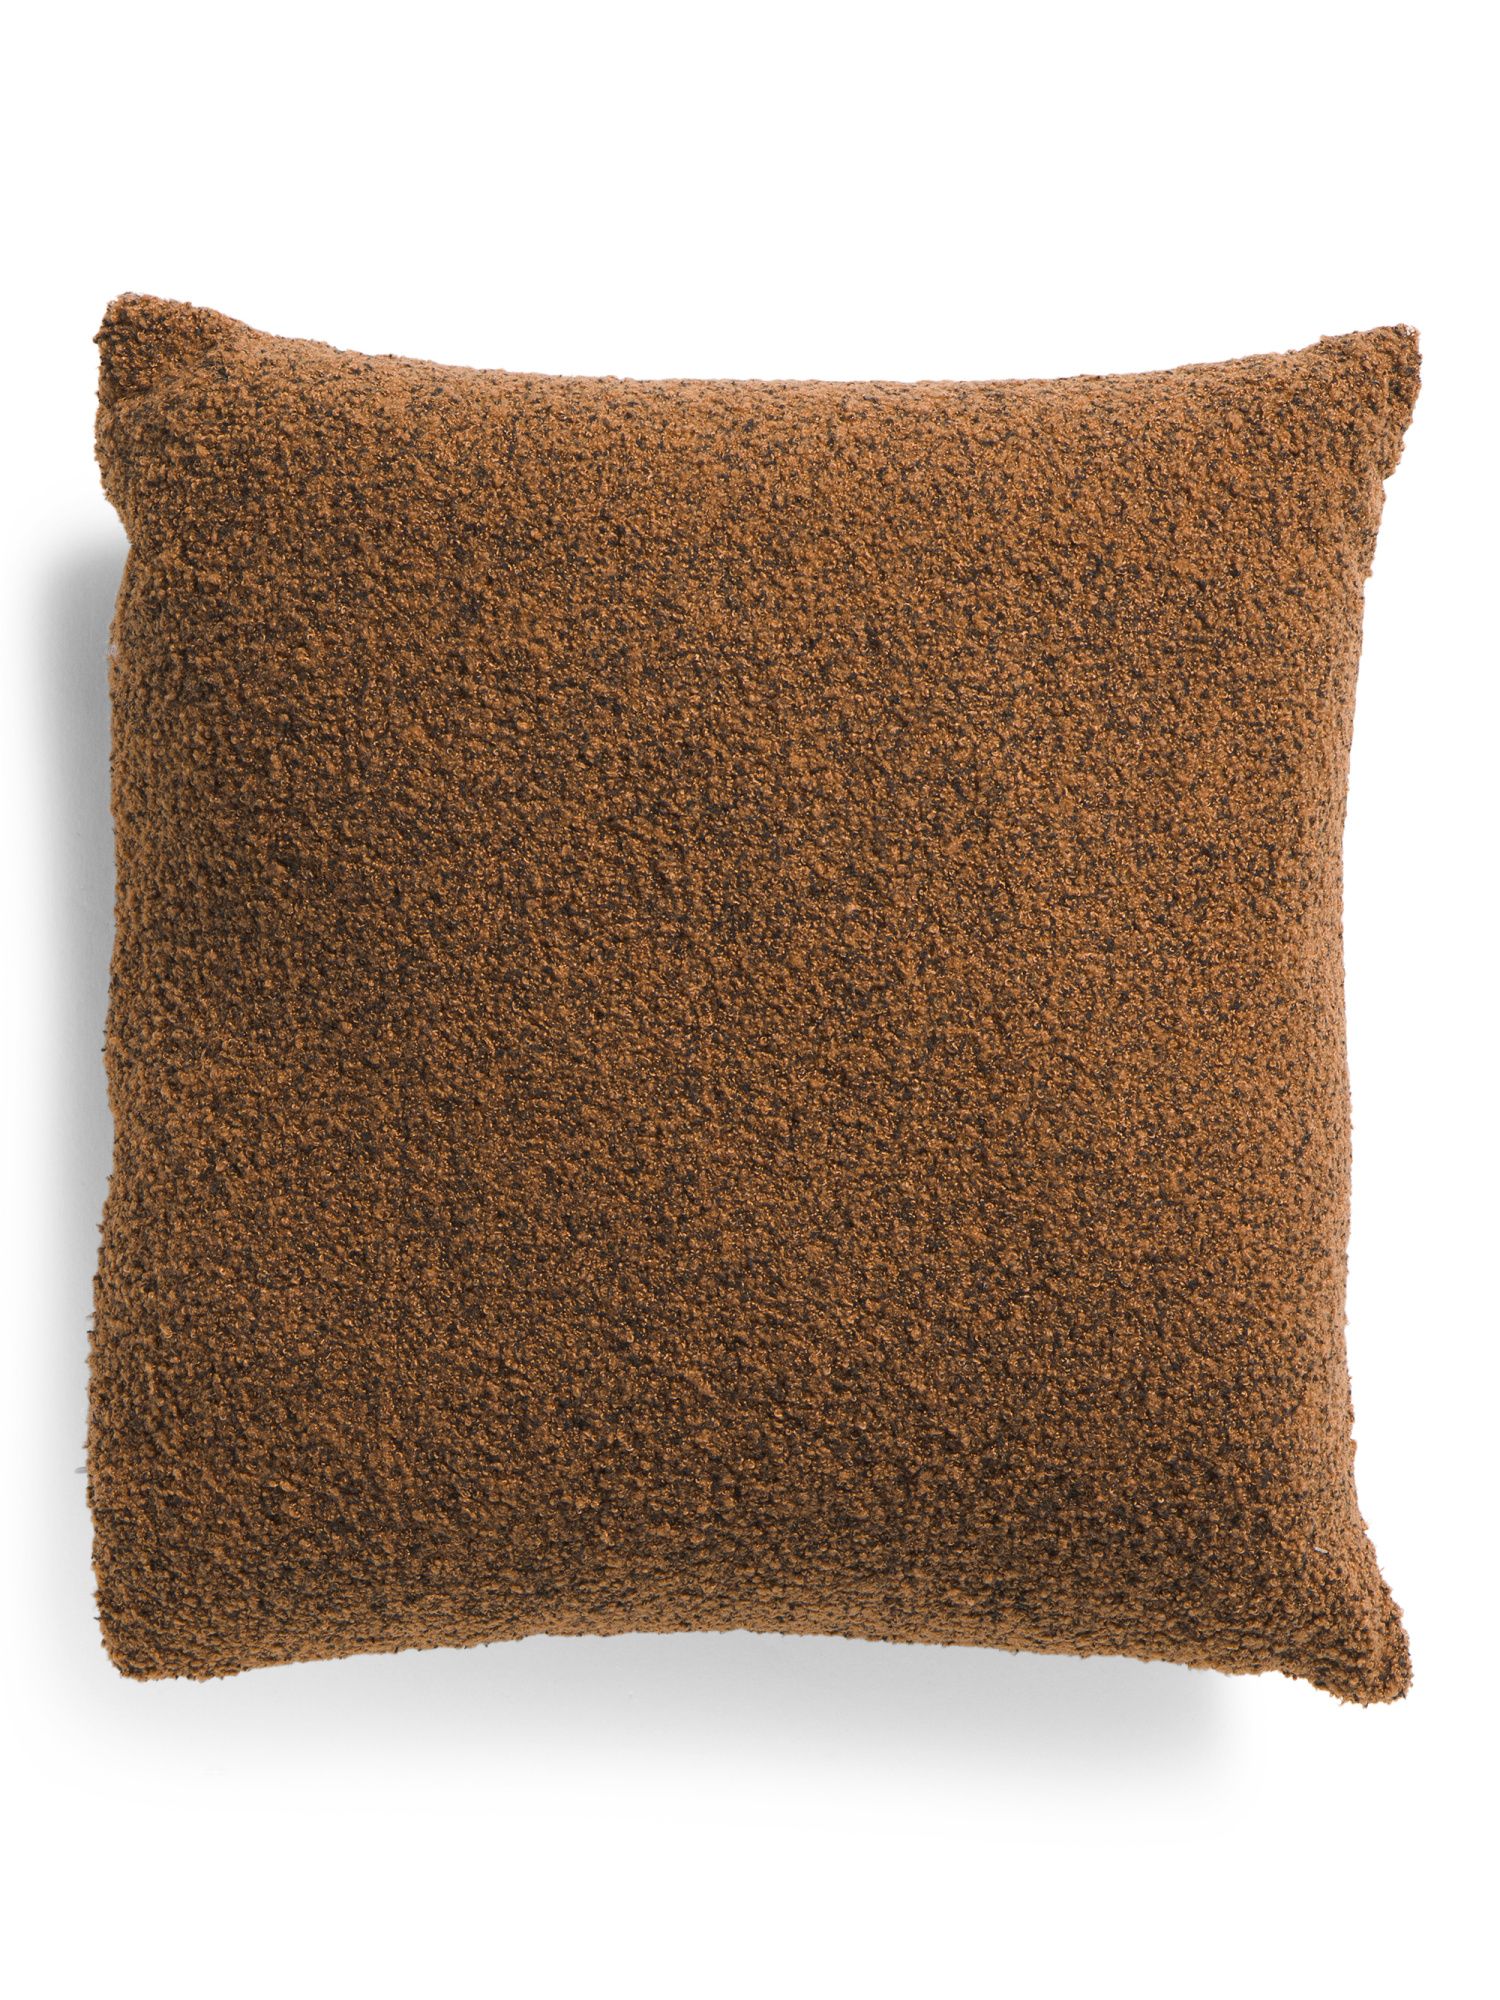 20x20 Sherpa Textured Pillow | TJ Maxx